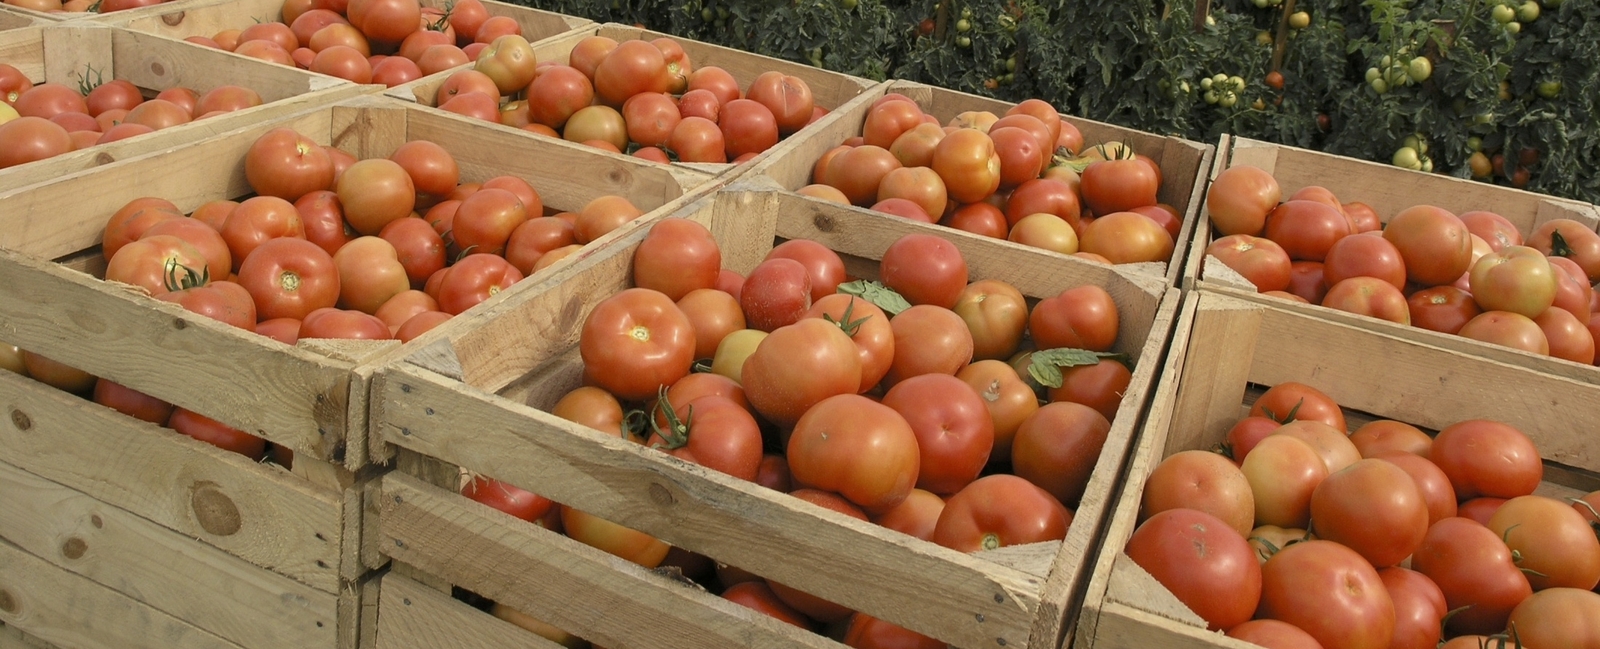 Incrementar el rendimiento del tomate